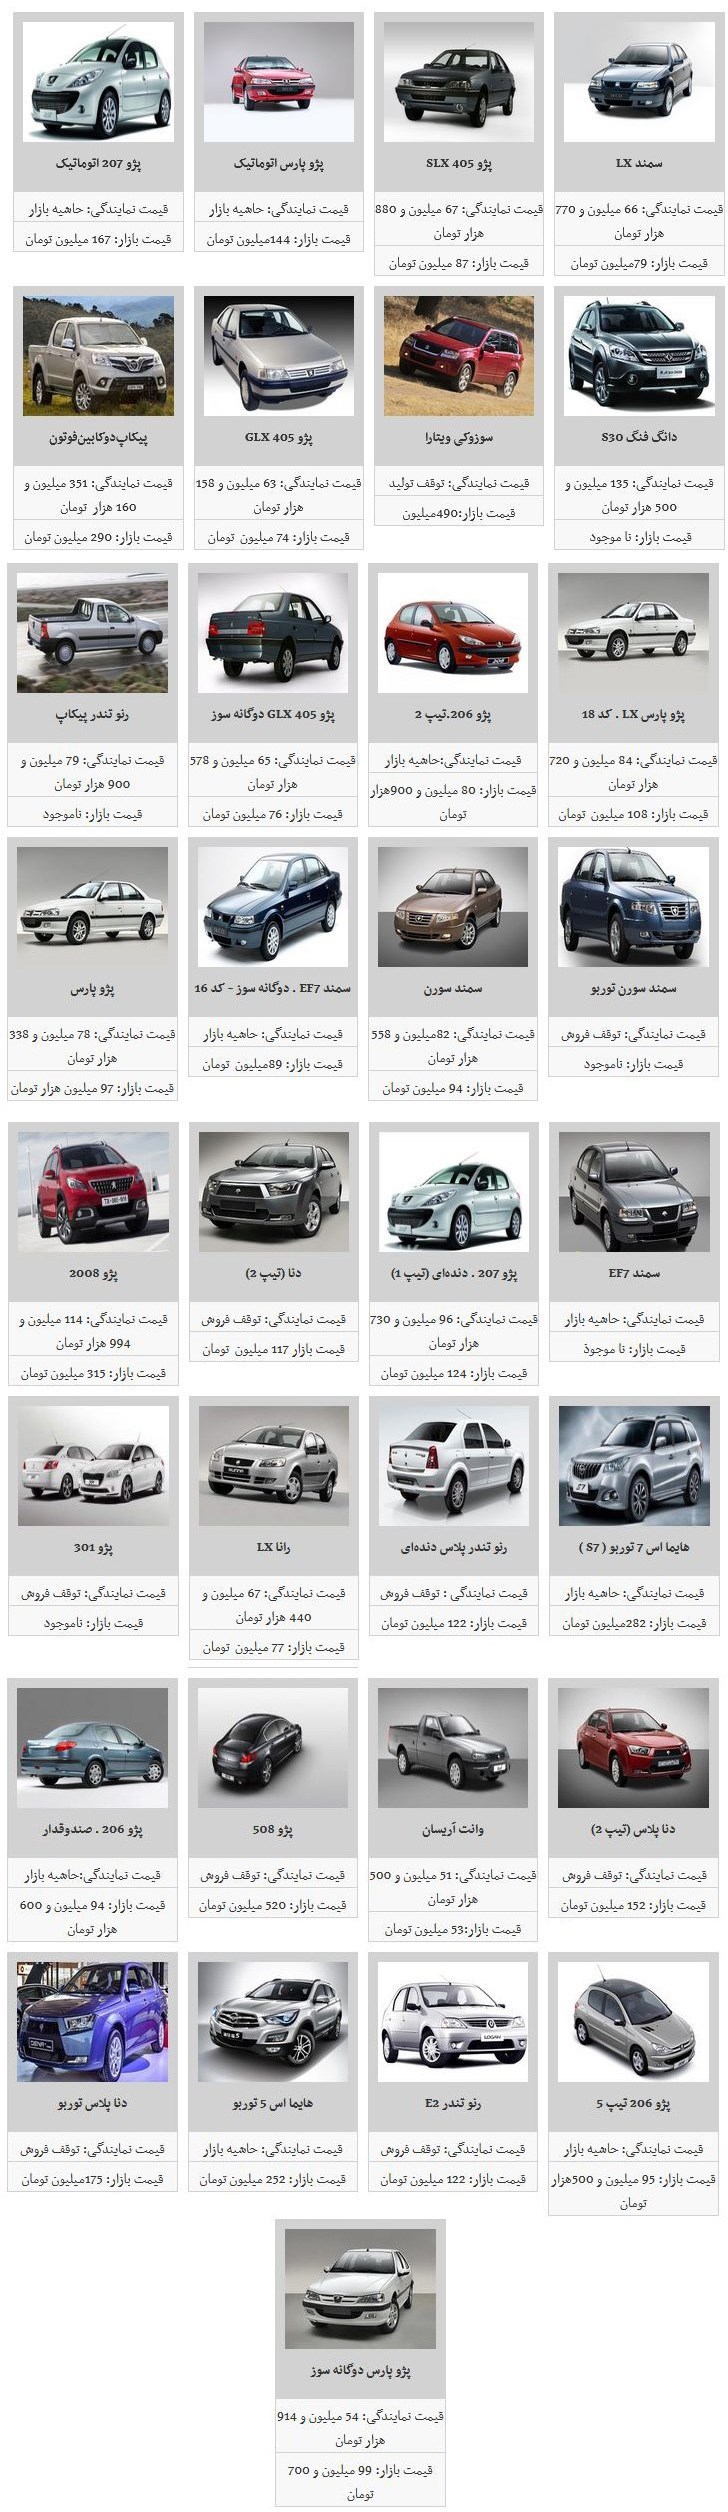 قیمت محصولات ایران خودرو بار دیگر نزولی شد